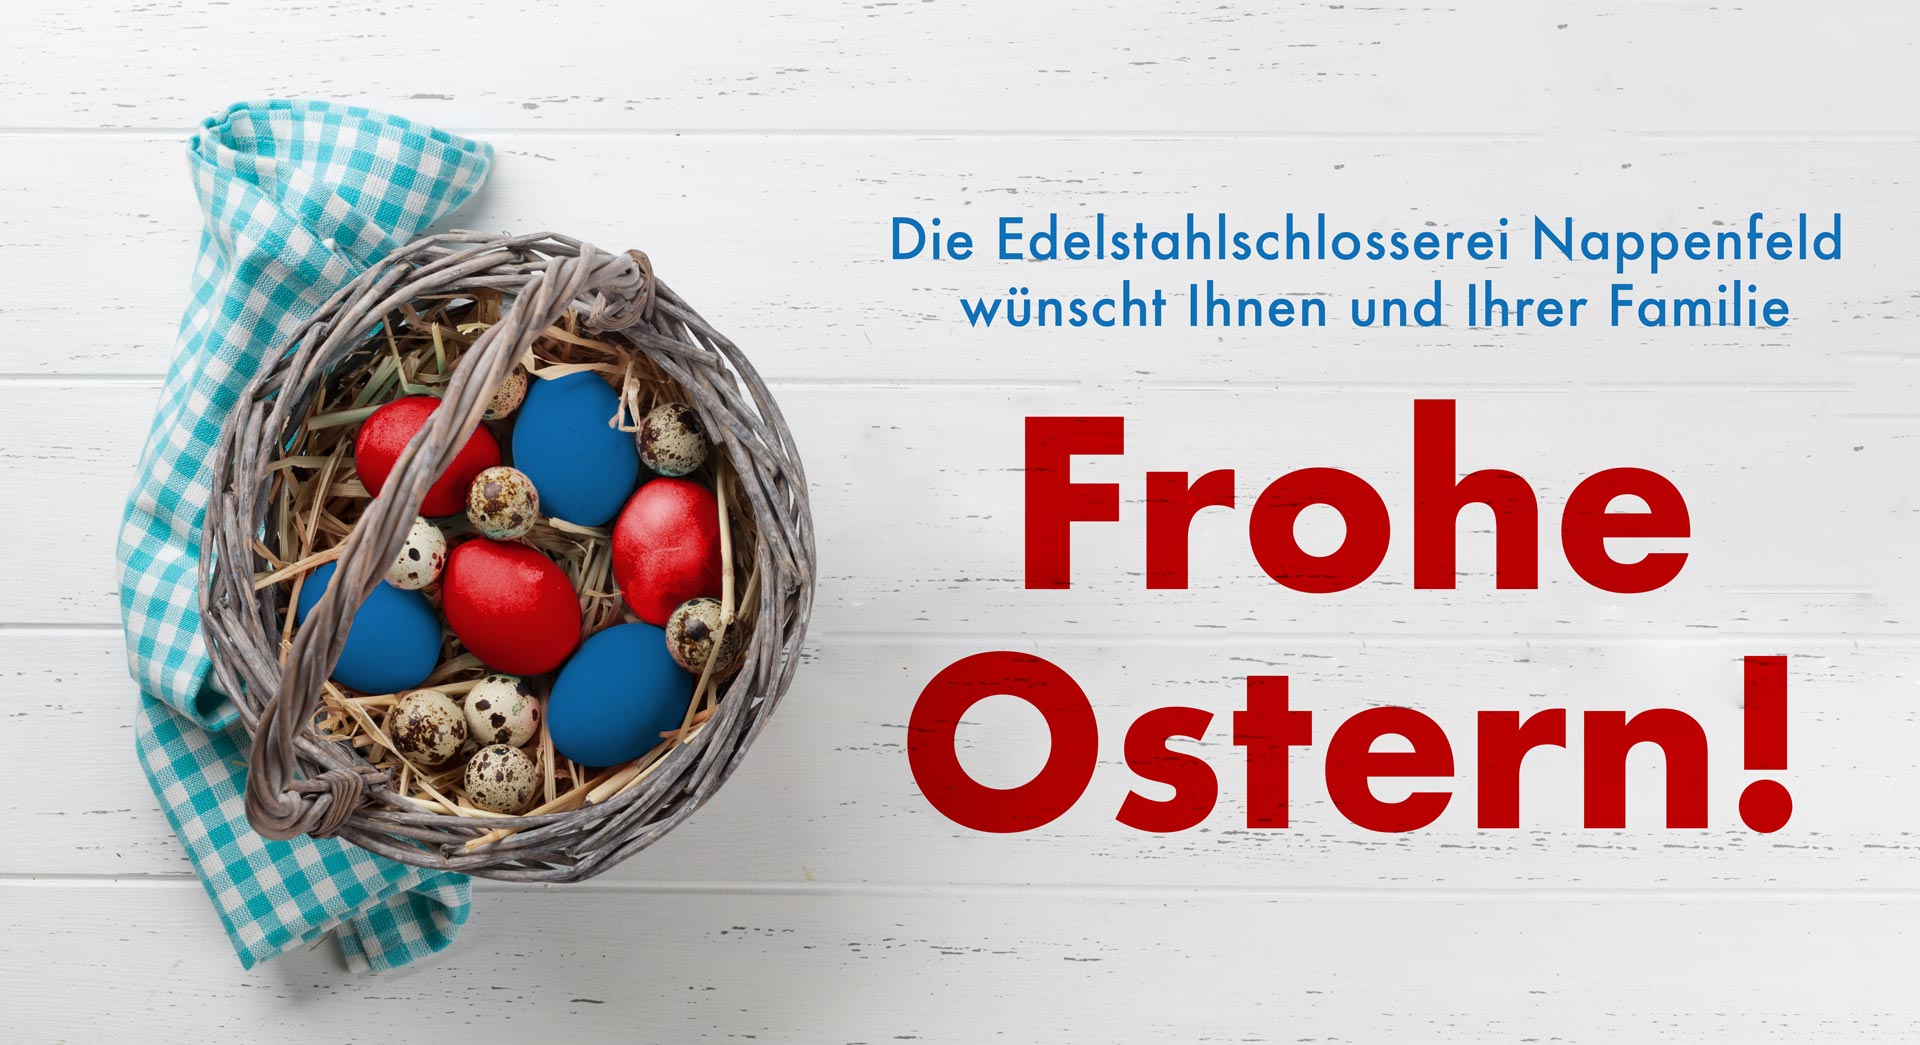 Die Edelstahlschlosserei Nappenfeld aus Mühlheim wünscht Ihnen und Ihren Familien von Herzen frohe Ostern